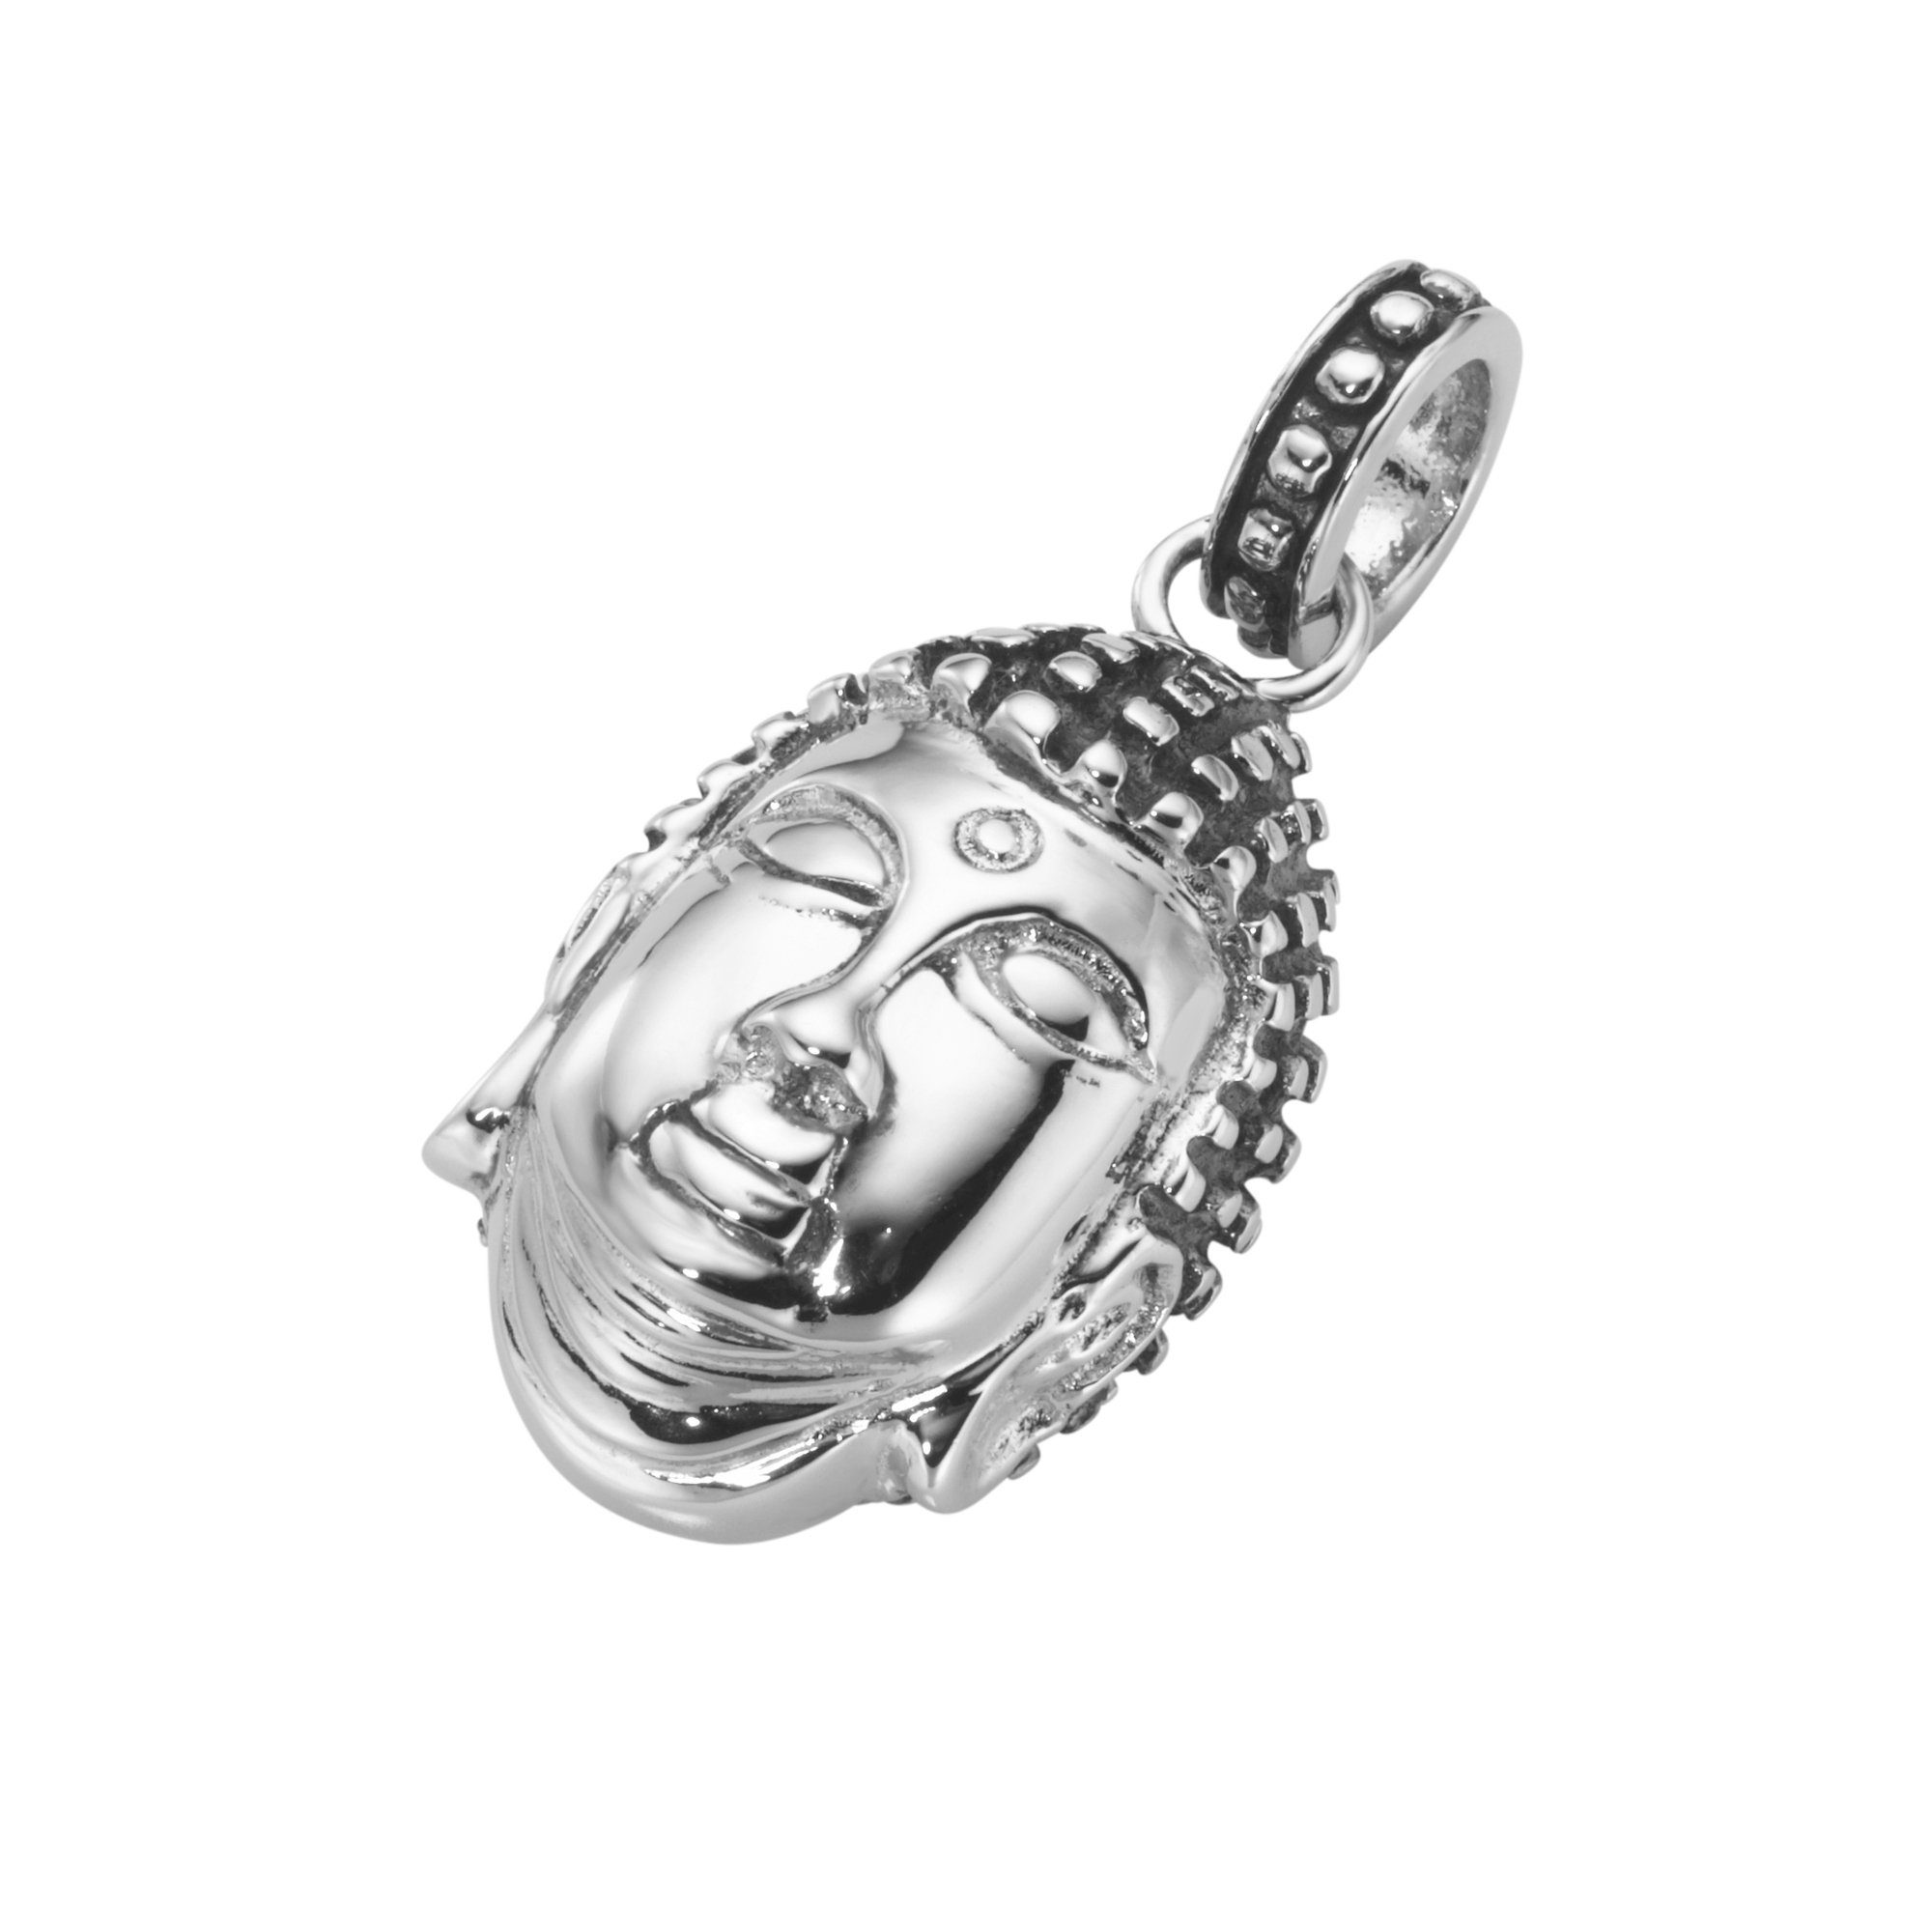 GIORGIO MARTELLO MILANO Kettenanhänger Buddha-Kopf, Silber geschwärzt, teilweise 925